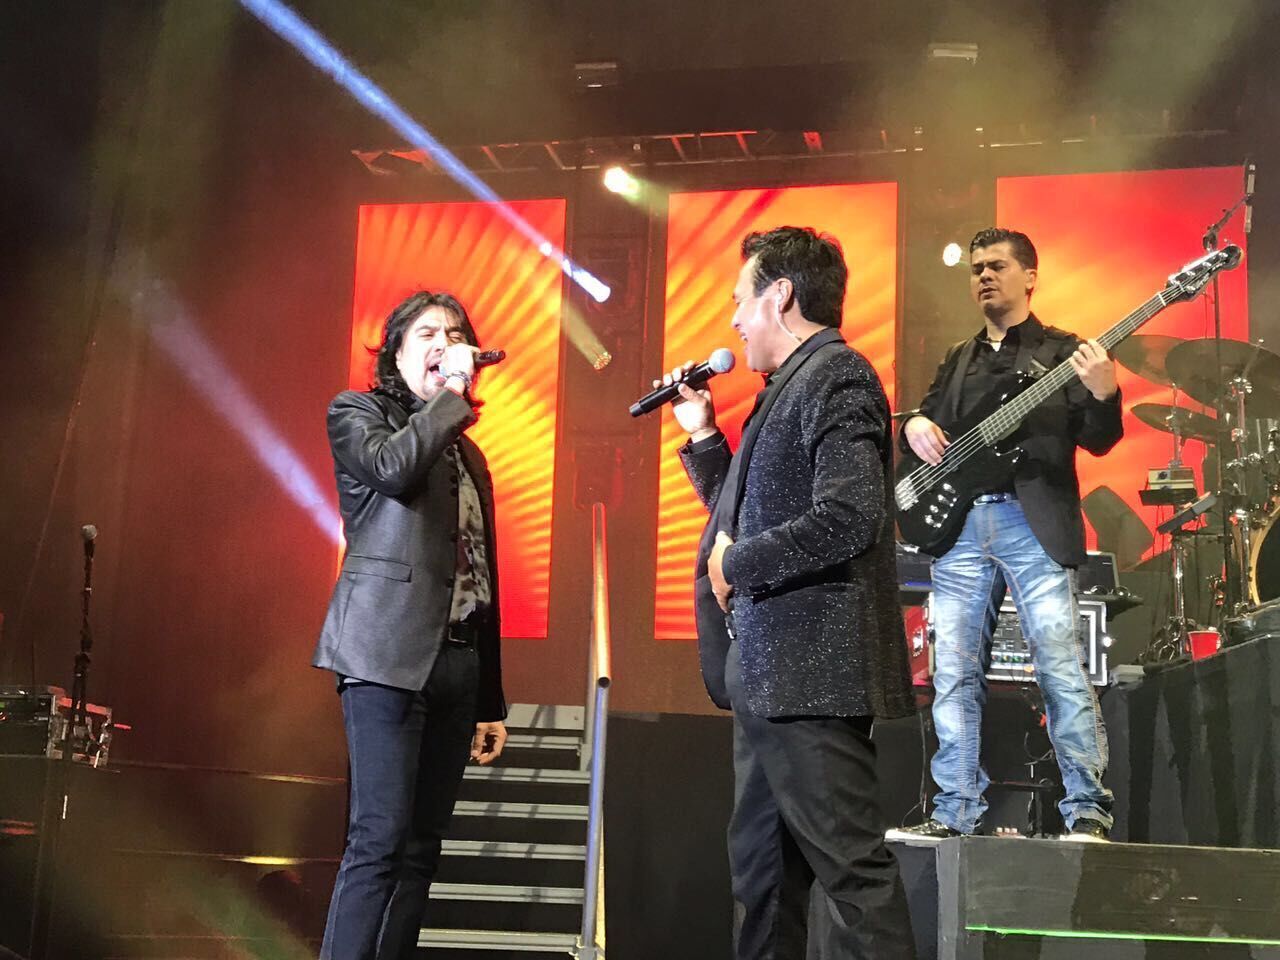 Celebrando 40 años de romance! Los Temerarios llegan en concierto a Honduras | HCH.TV